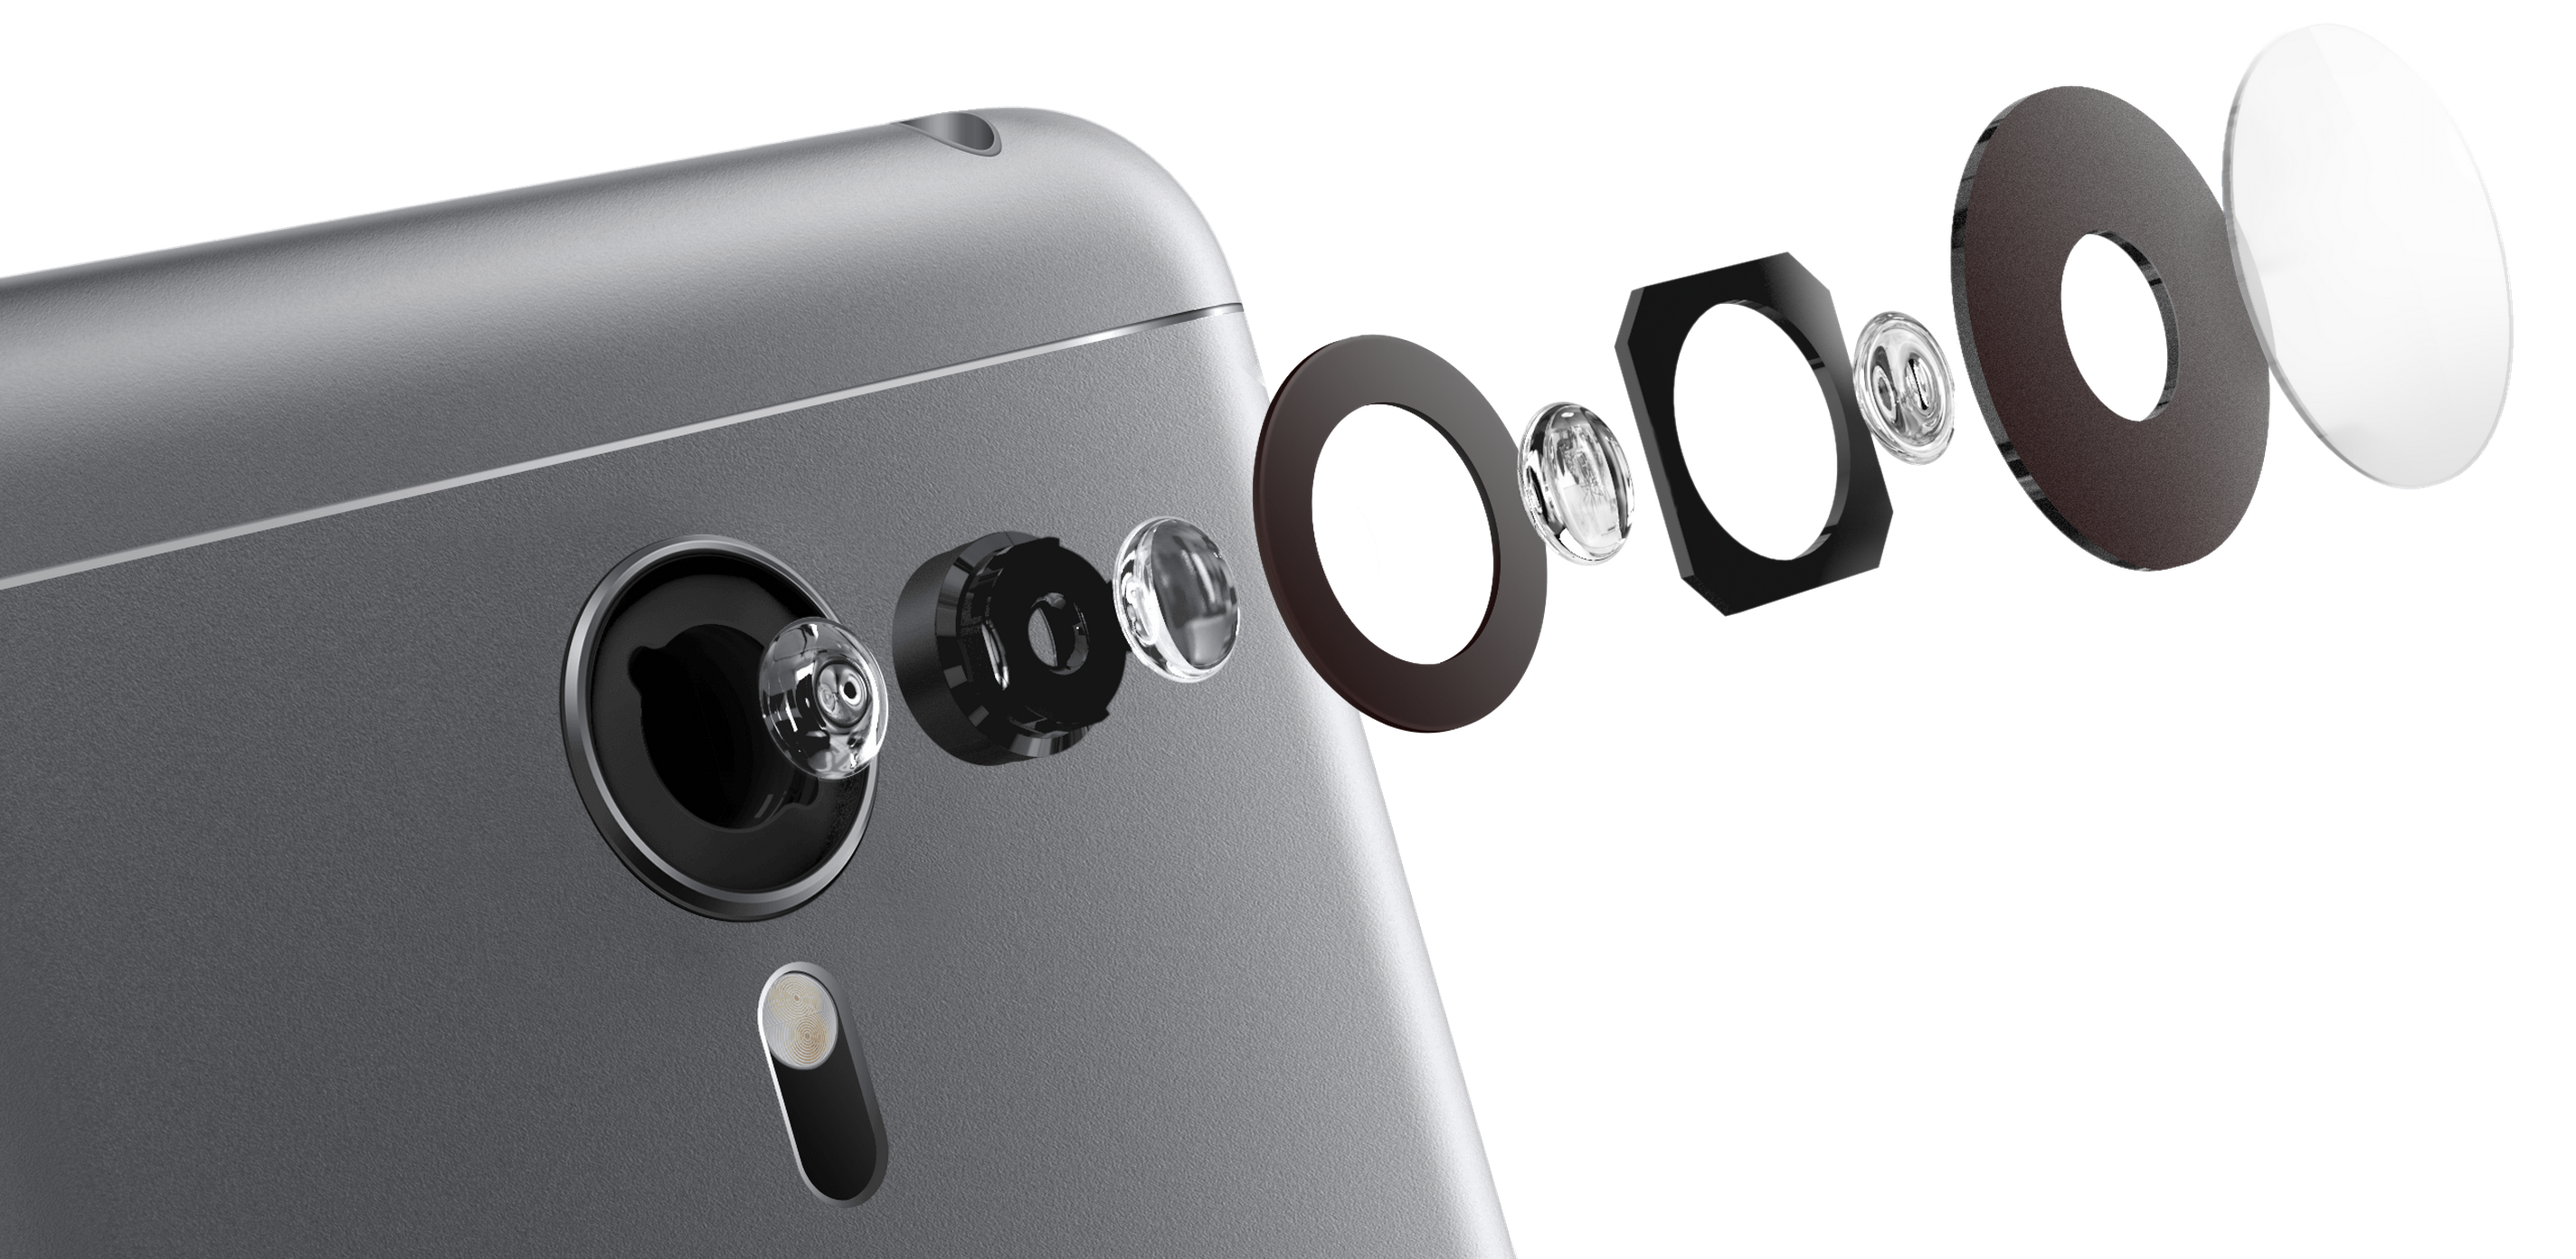 Meizu MX5 sporting a 20.7-megapixel camera